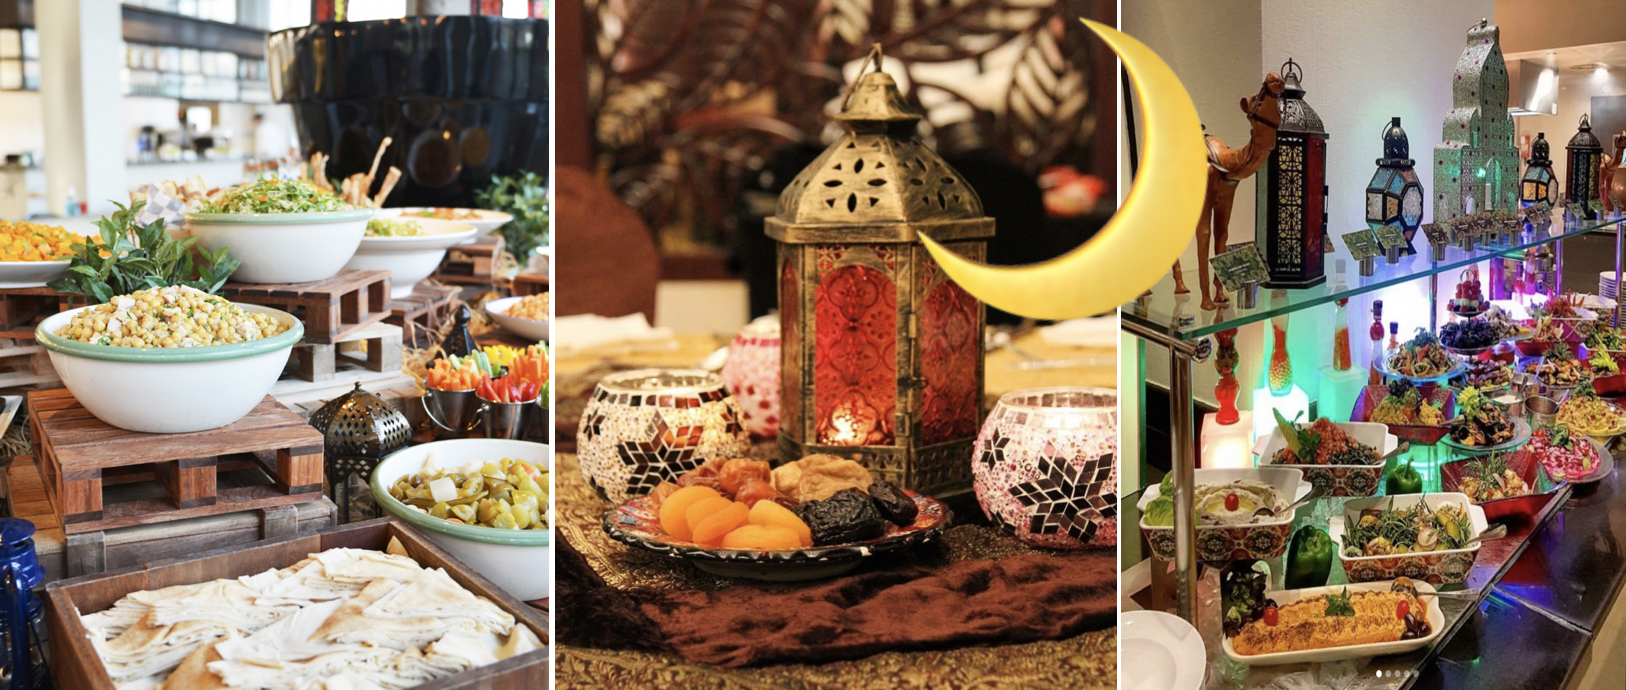 أفضل 10 عروض إفطار رمضانية بأقل من 150 درهم إماراتي في دبي مطاعم إسكواير العربية